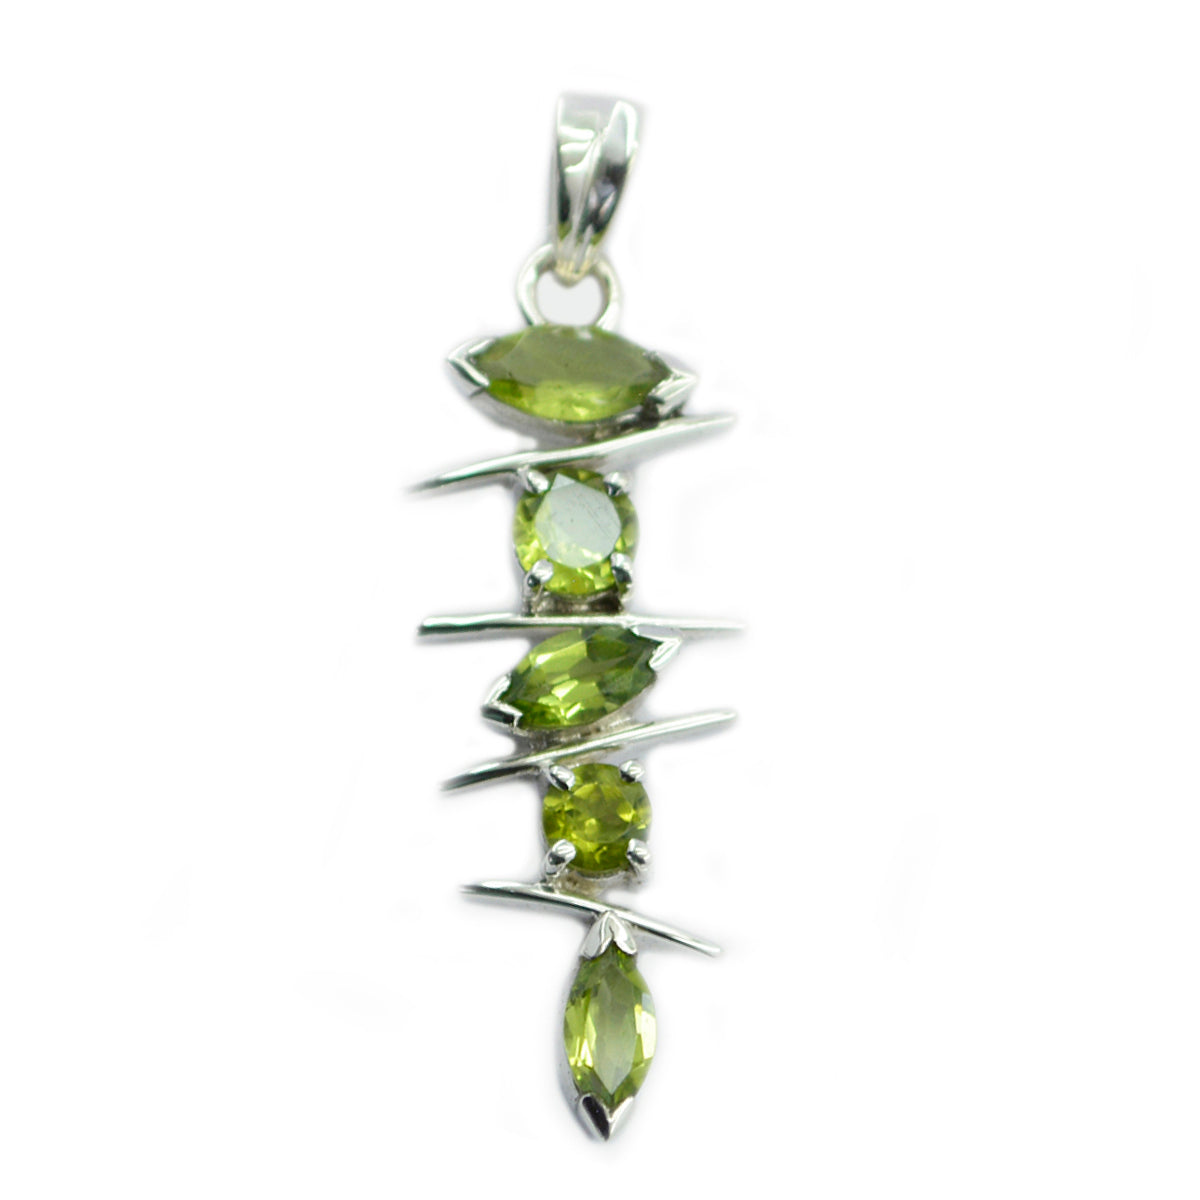 riyo lockande ädelstenar mångfacetterad grön peridot silverhänge present för förlovning